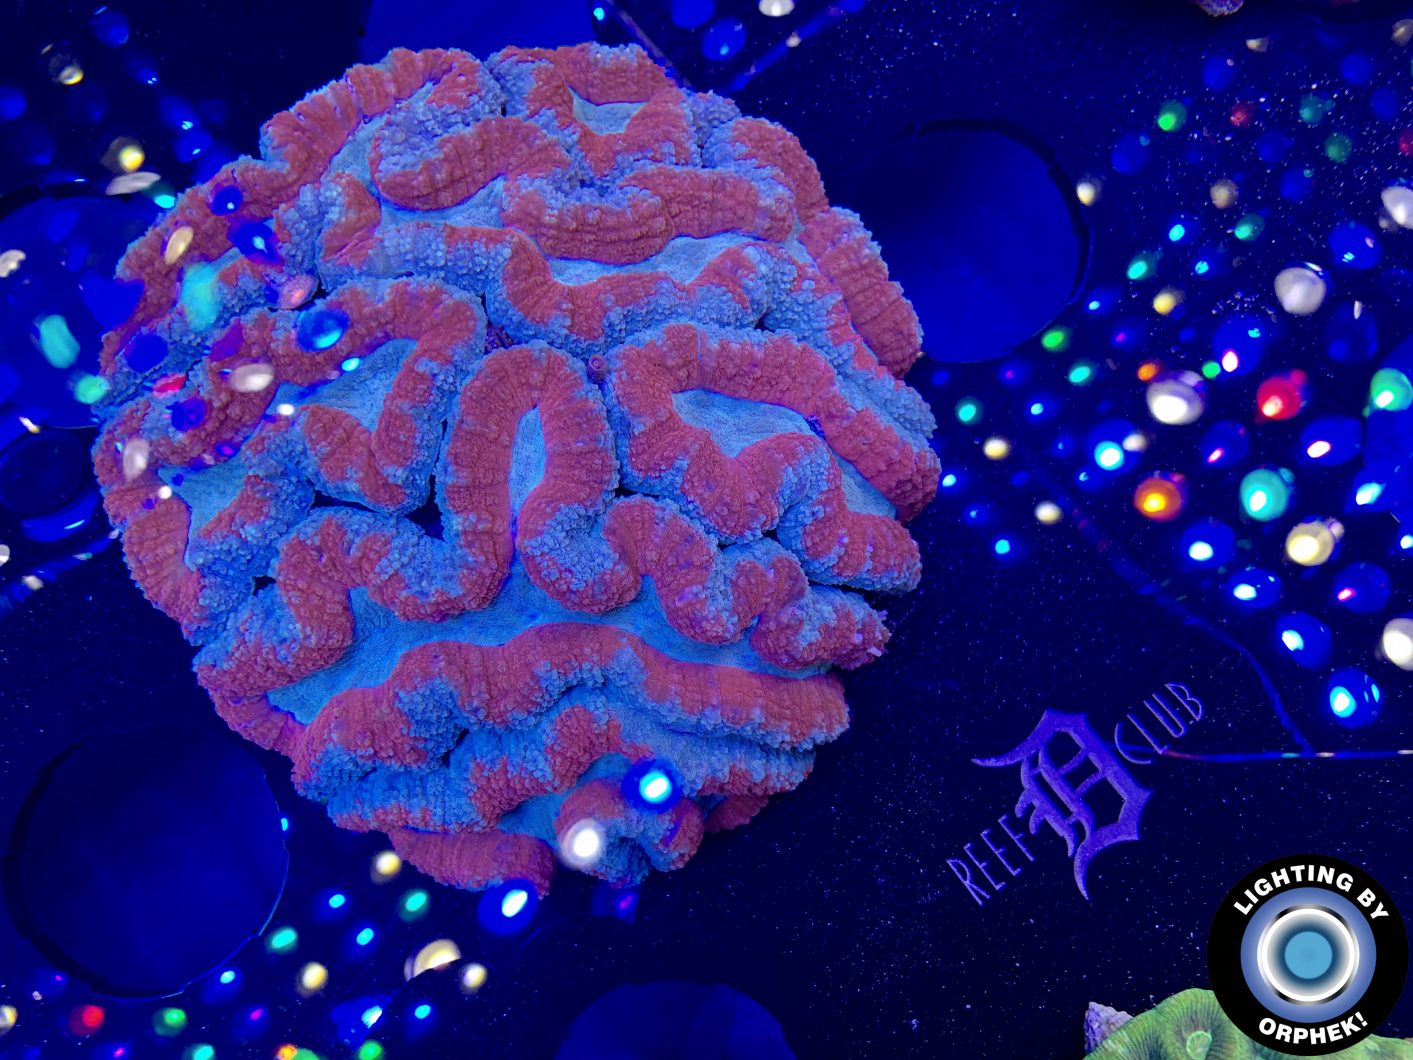 κορυφαία κοράλλια καλλιέργεια φωτισμού orphek